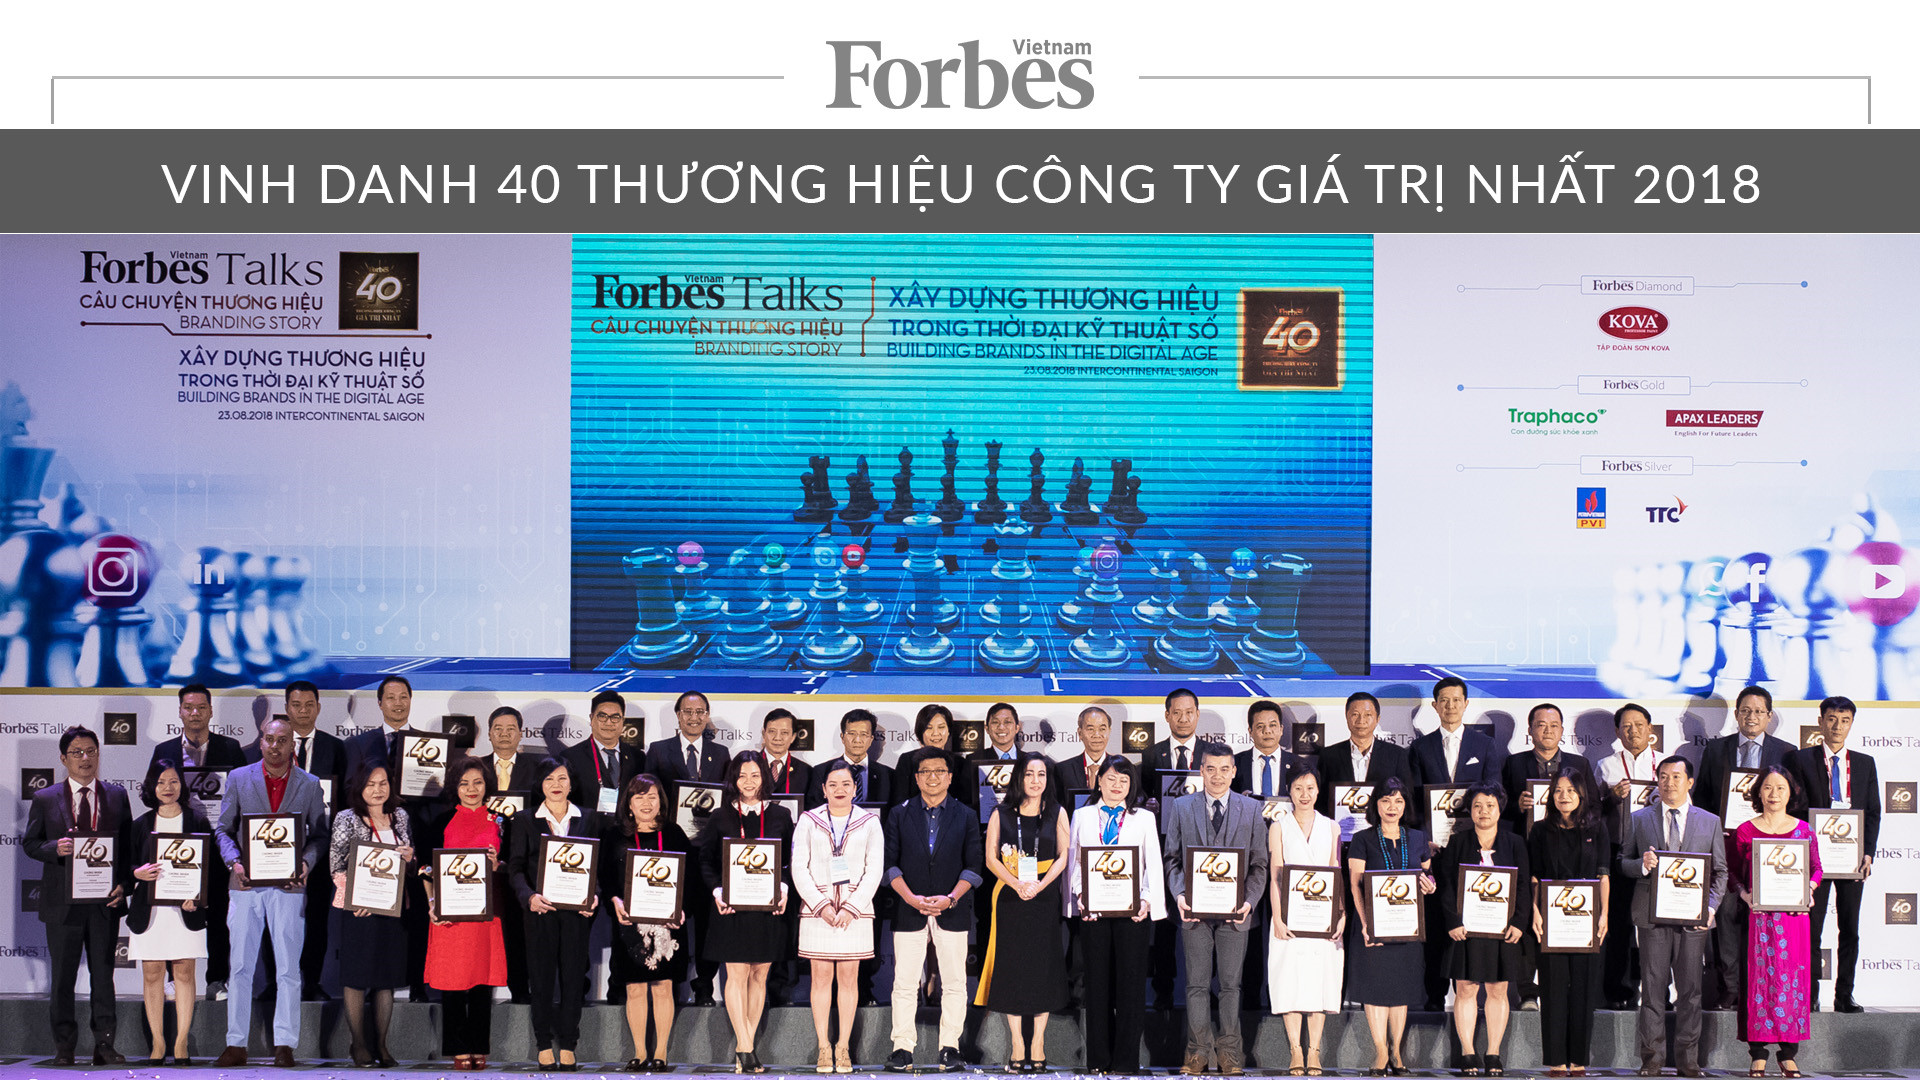 HABECO nằm trong Top 40 thương hiệu công ty giá trị nhất Việt Nam